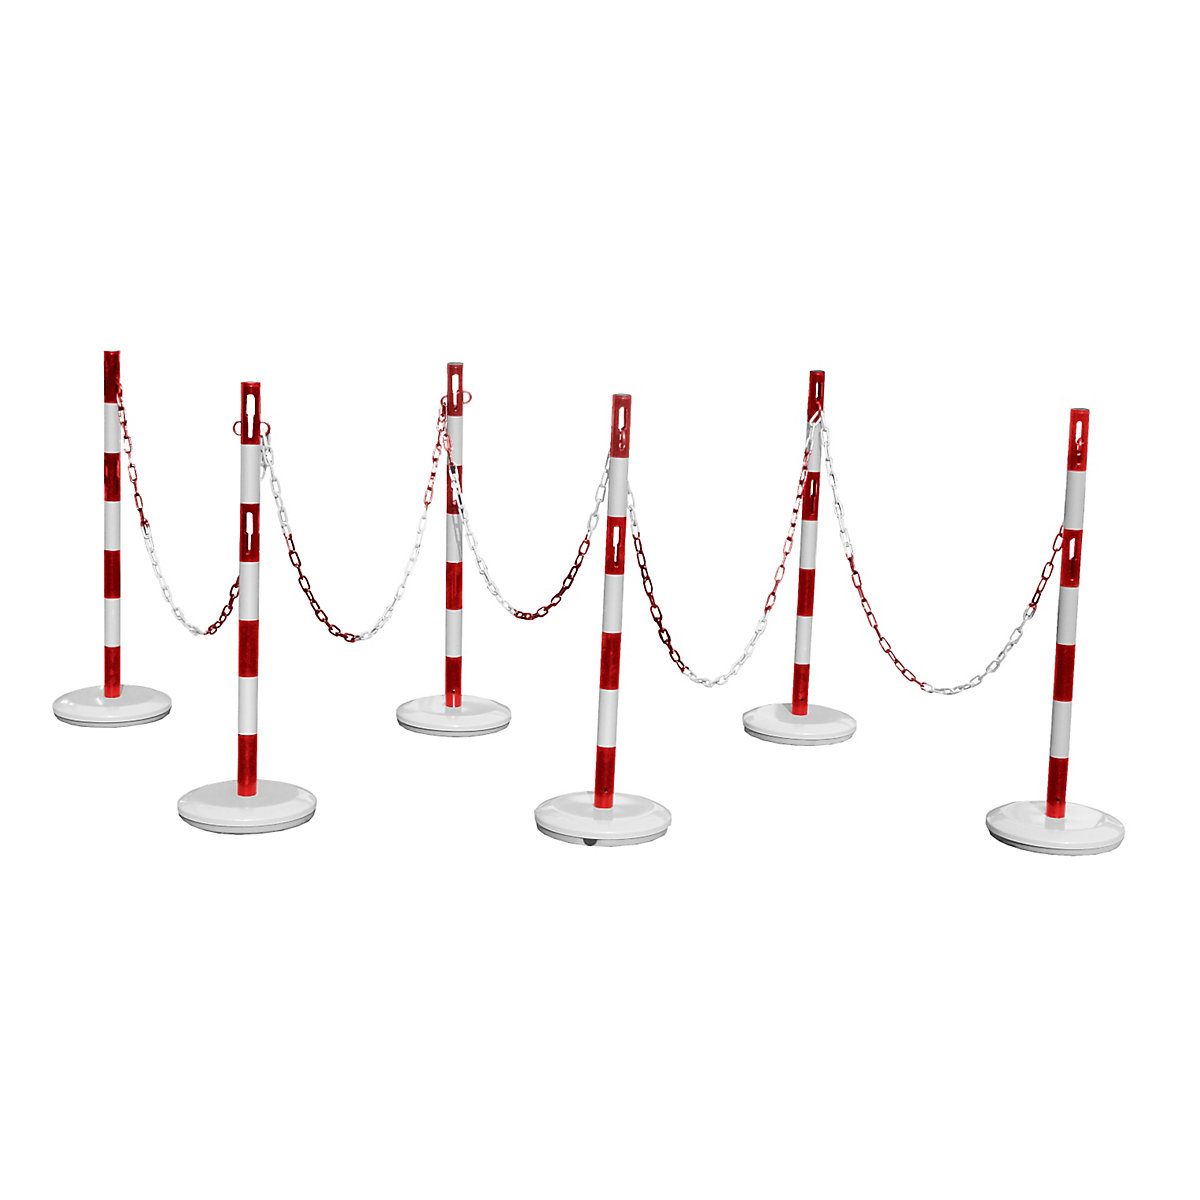 Juego de postes barrera con cadena – VISO, 6 postes, cadena de 15 m, rojo / blanco-4